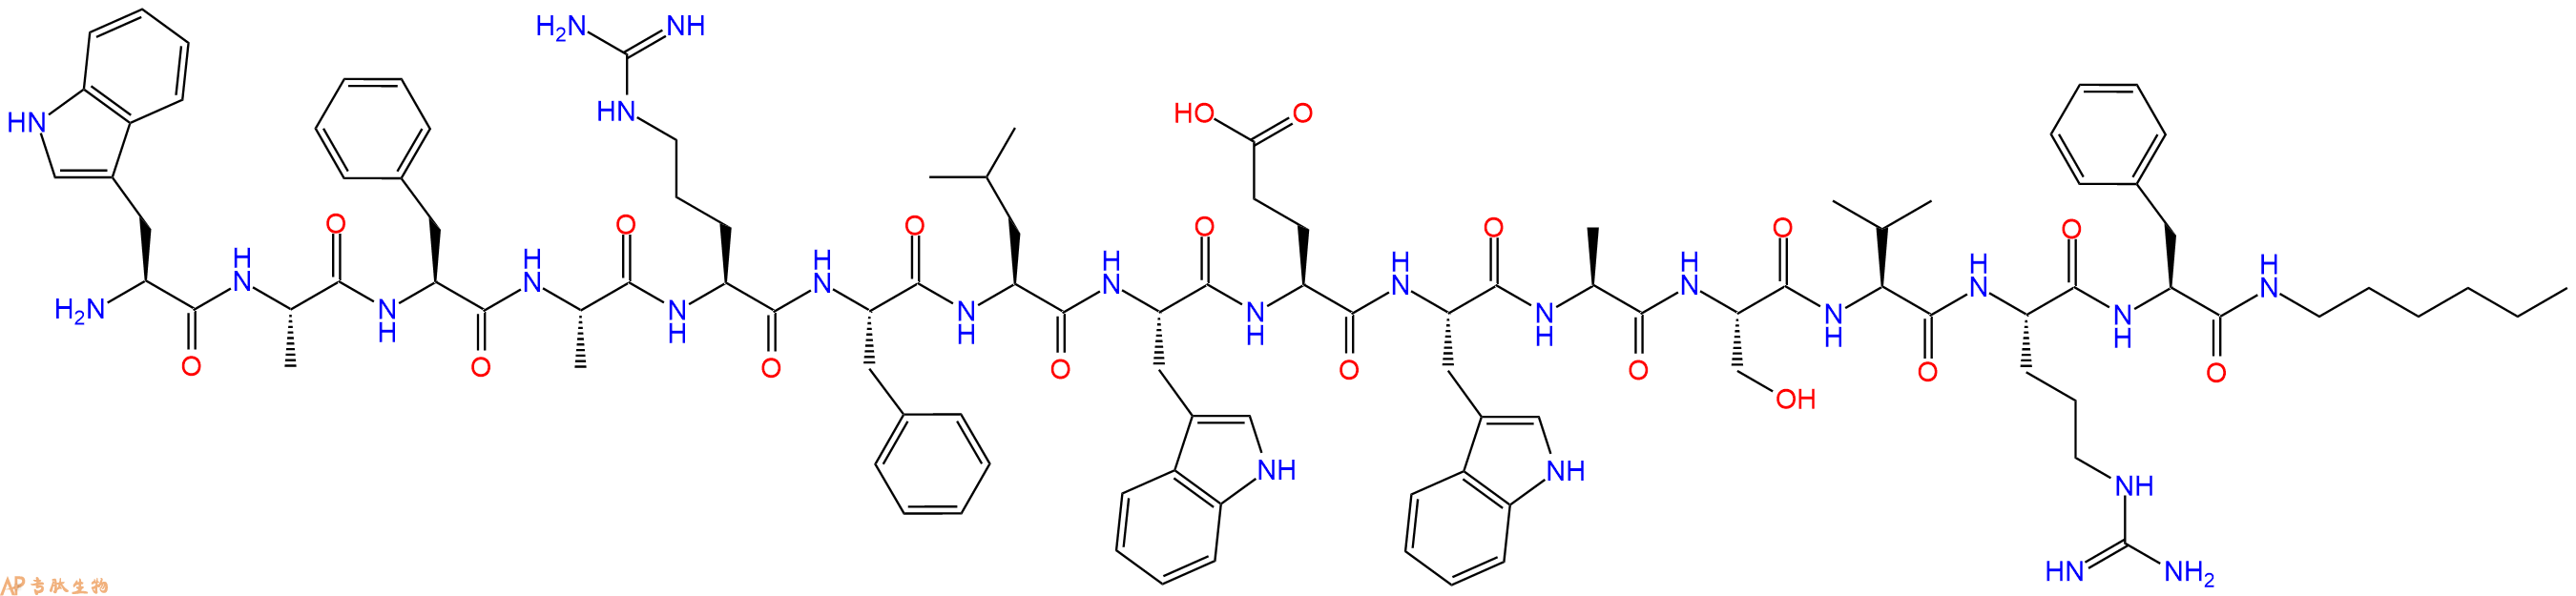 专肽生物产品H2N-Trp-Ala-Phe-Ala-Arg-Phe-Leu-Trp-Glu-Trp-Ala-Se